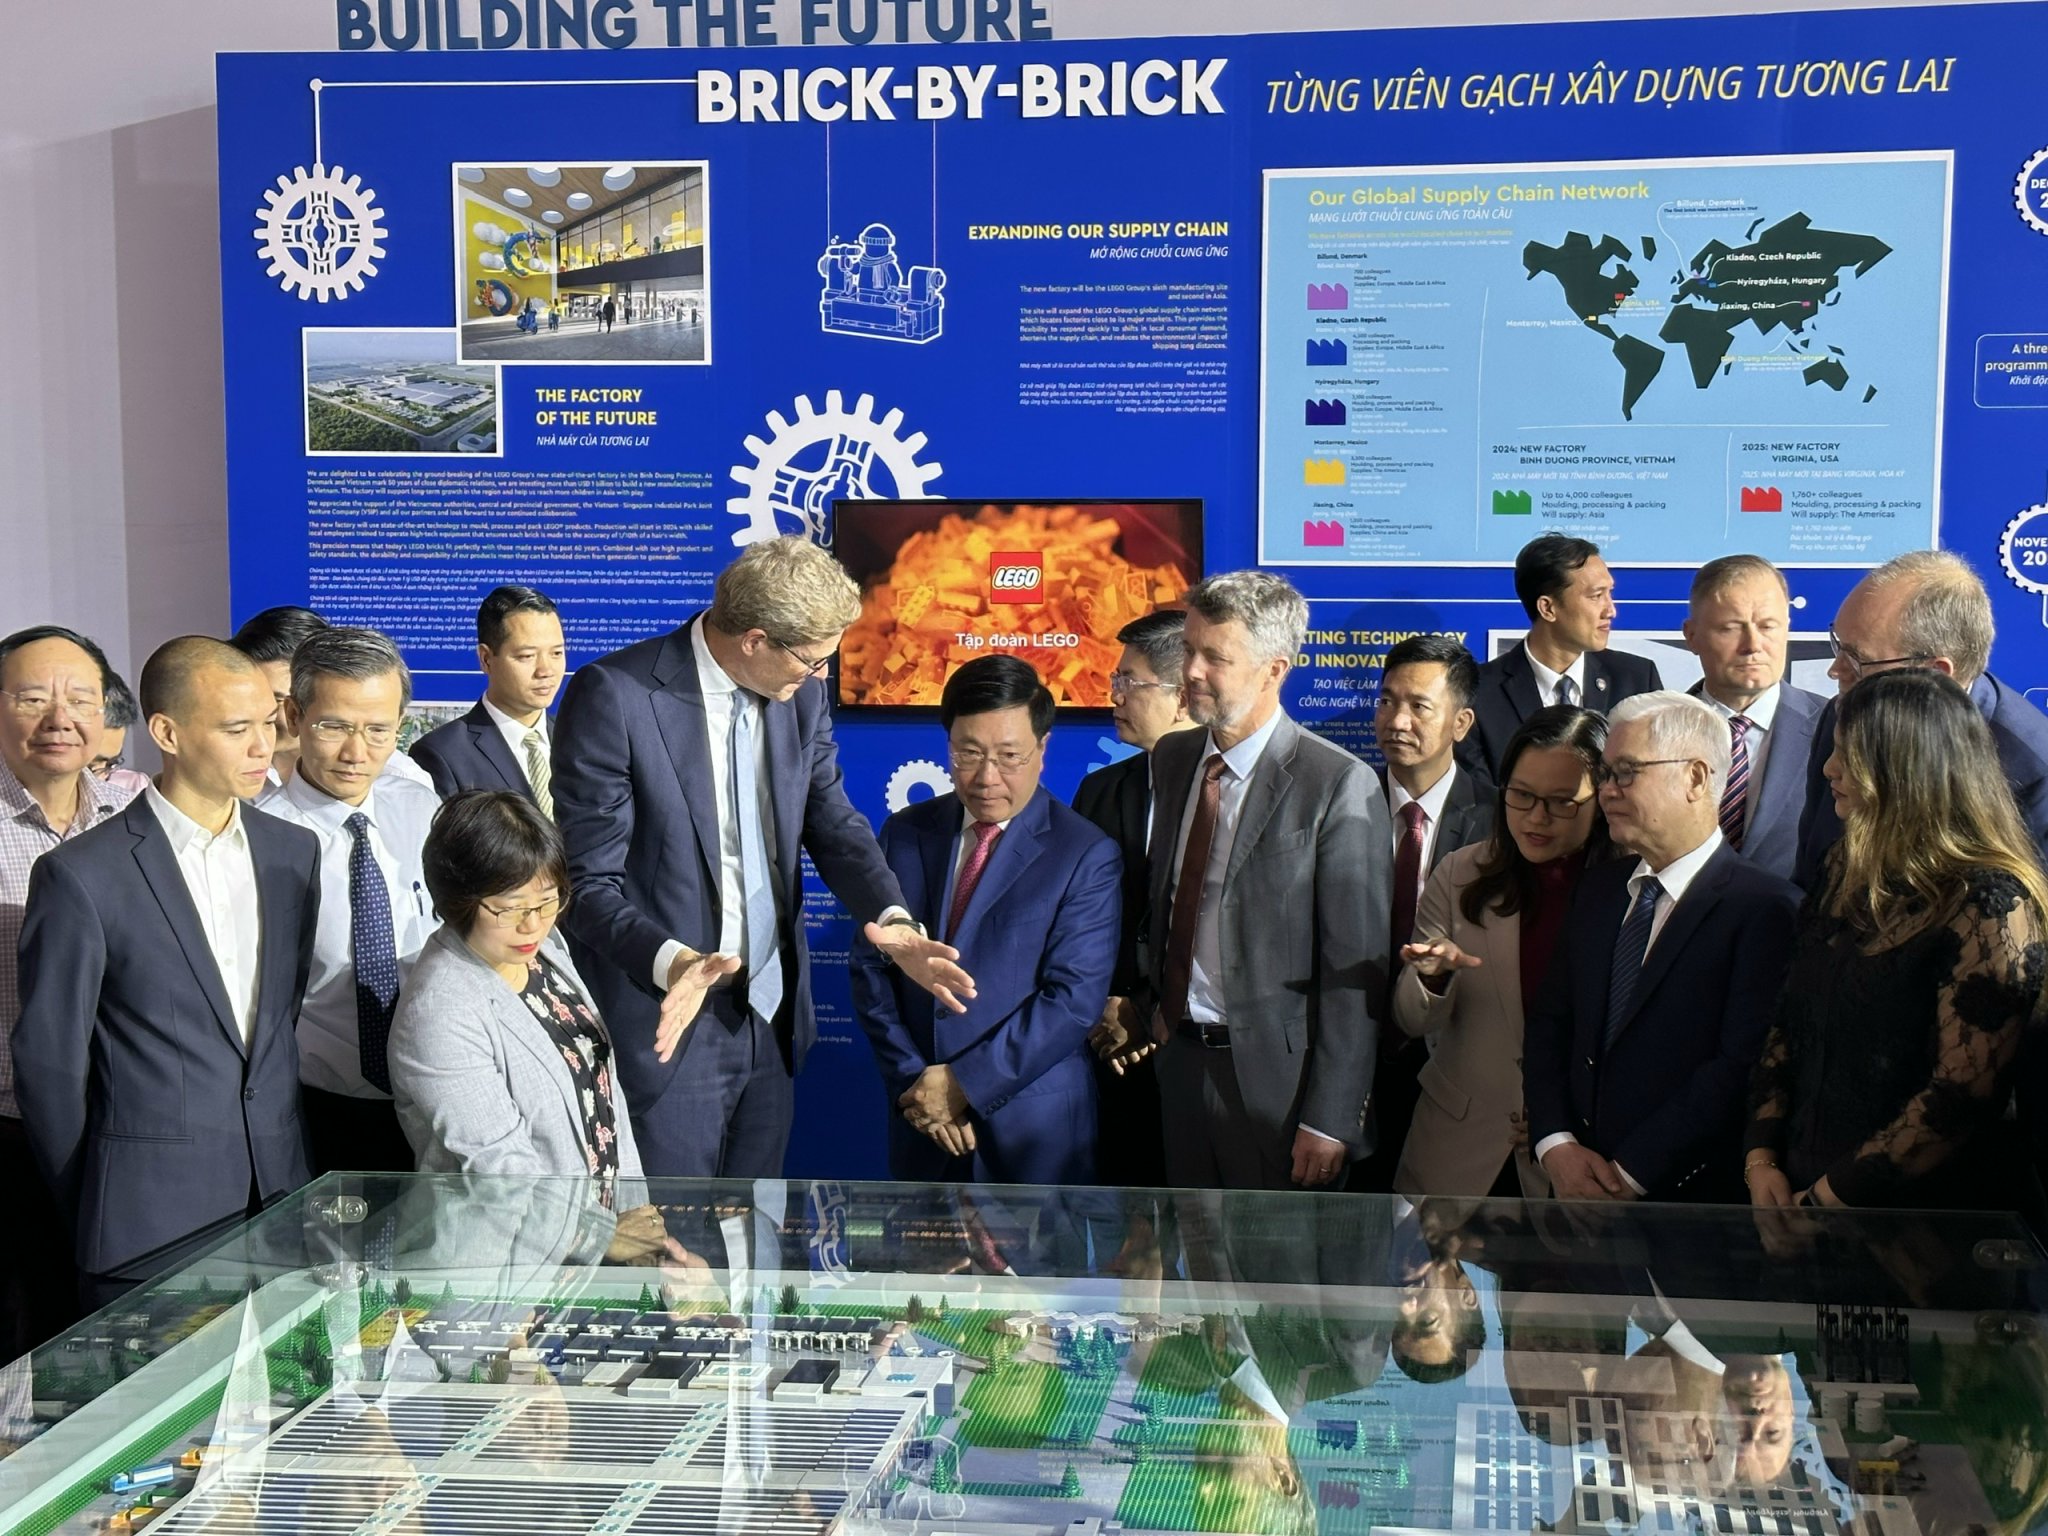 Đánh giá lego xây dựng nhà máy ở Việt Nam - Sự lựa chọn hoàn hảo của các doanh nghiệp